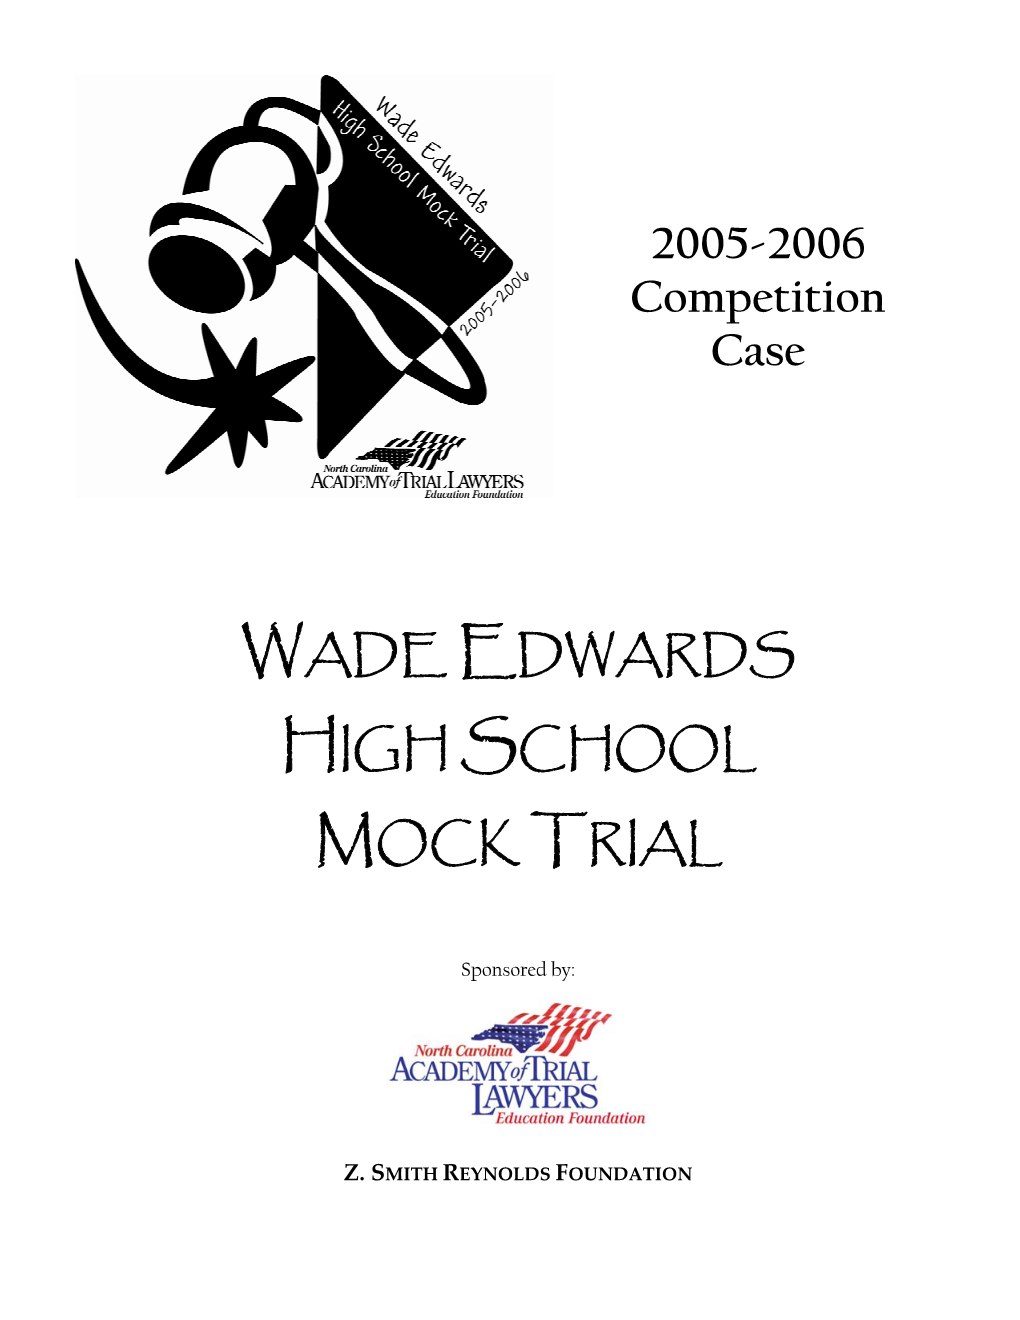 Wade Edwards High School Mock Trial